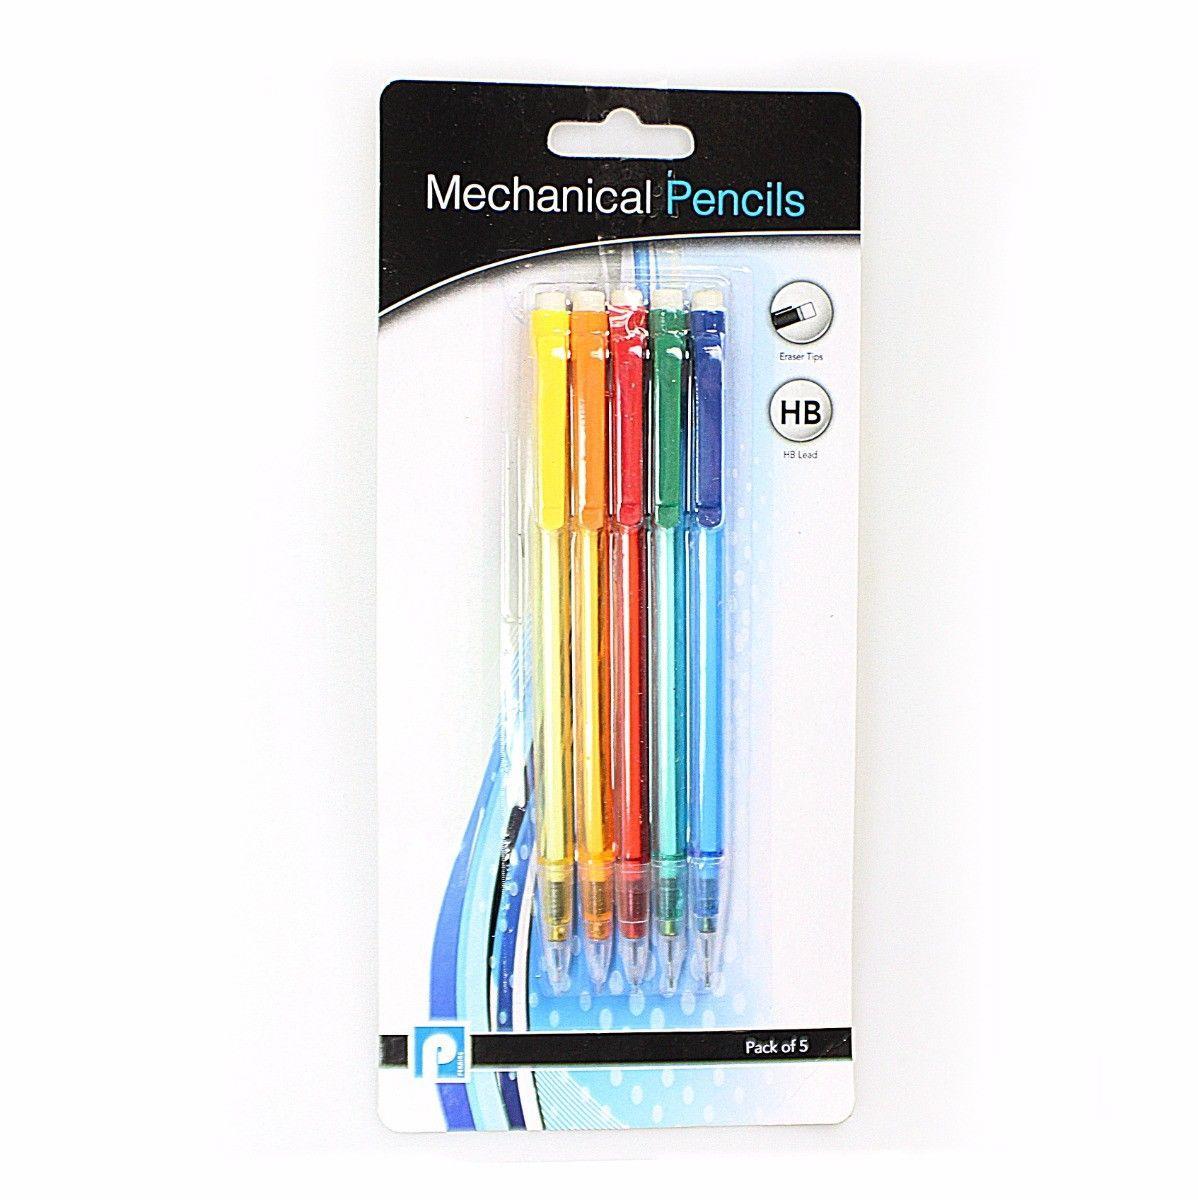 top mechanical pencils